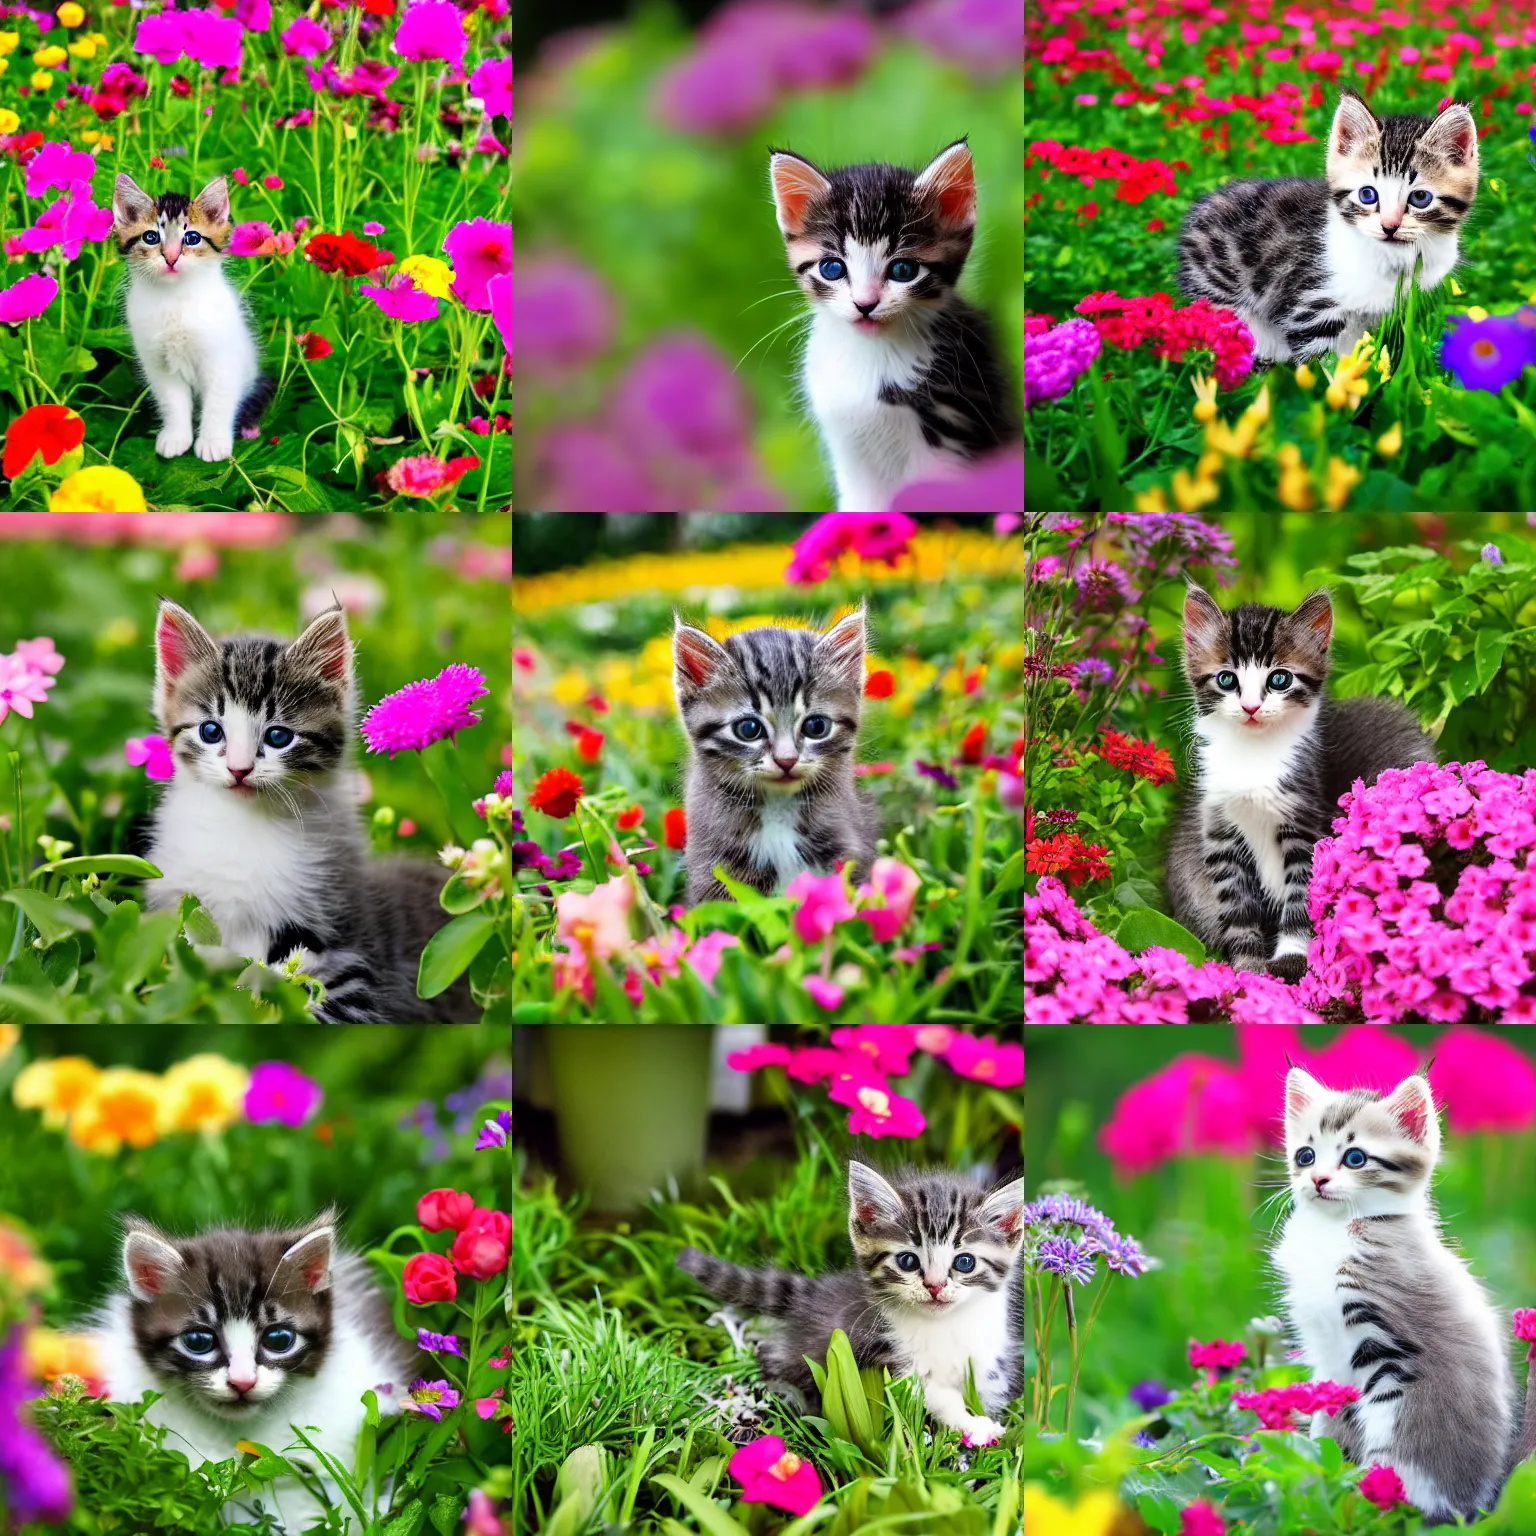 Prompt: a photograph of a kitten in a flower garden